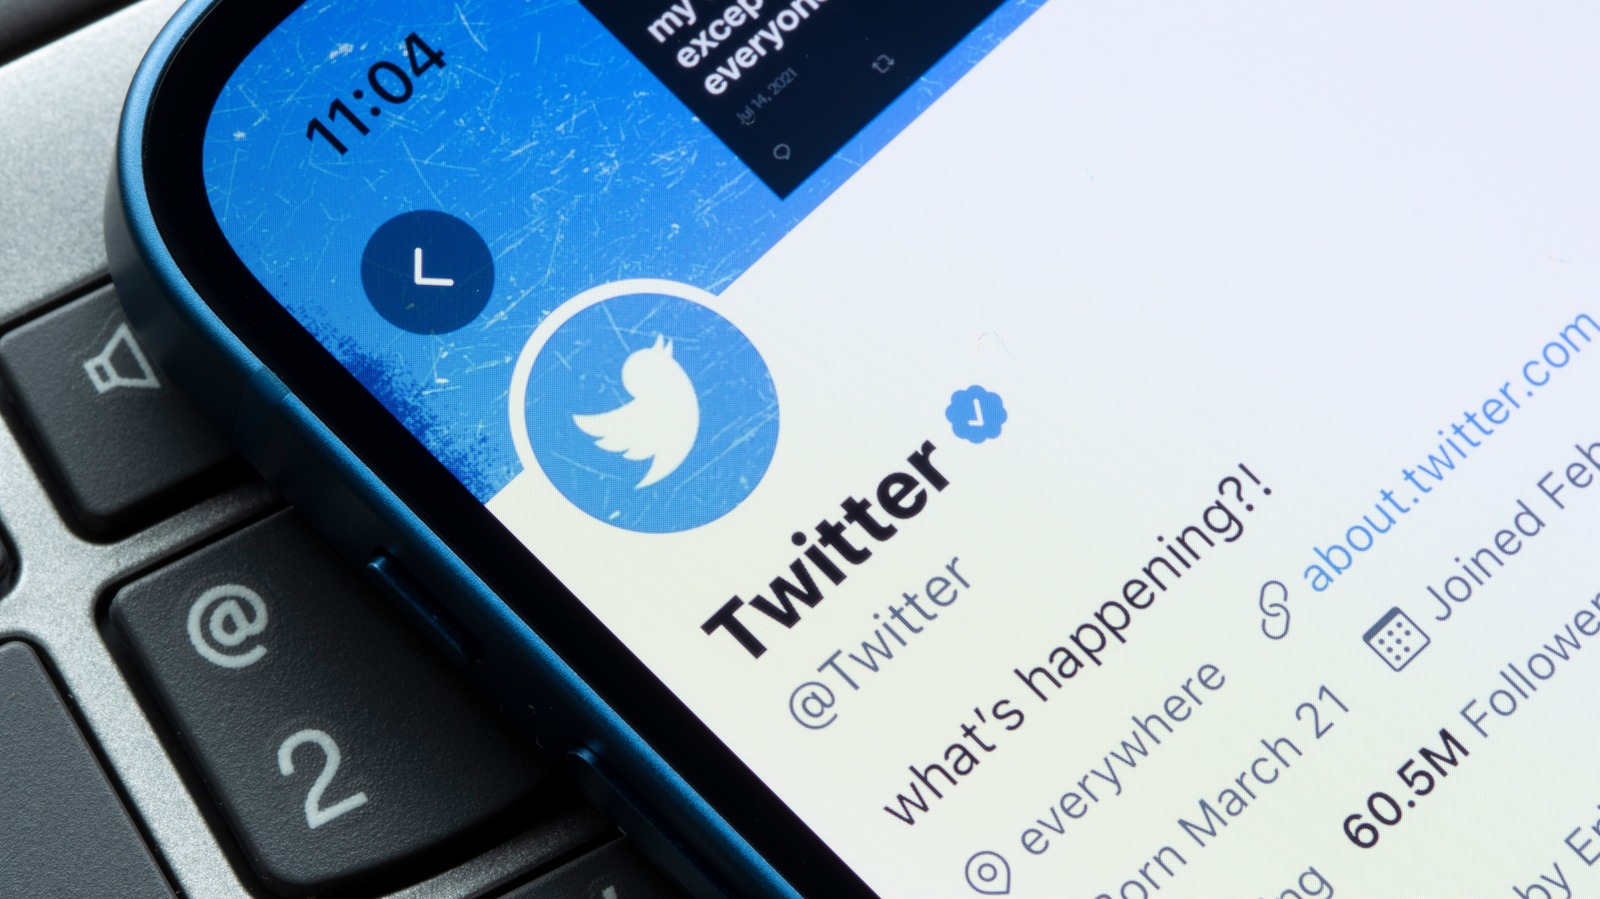 As notas do Twitter anunciam o fim das tempestades de tweets e o conceito unique do tweet